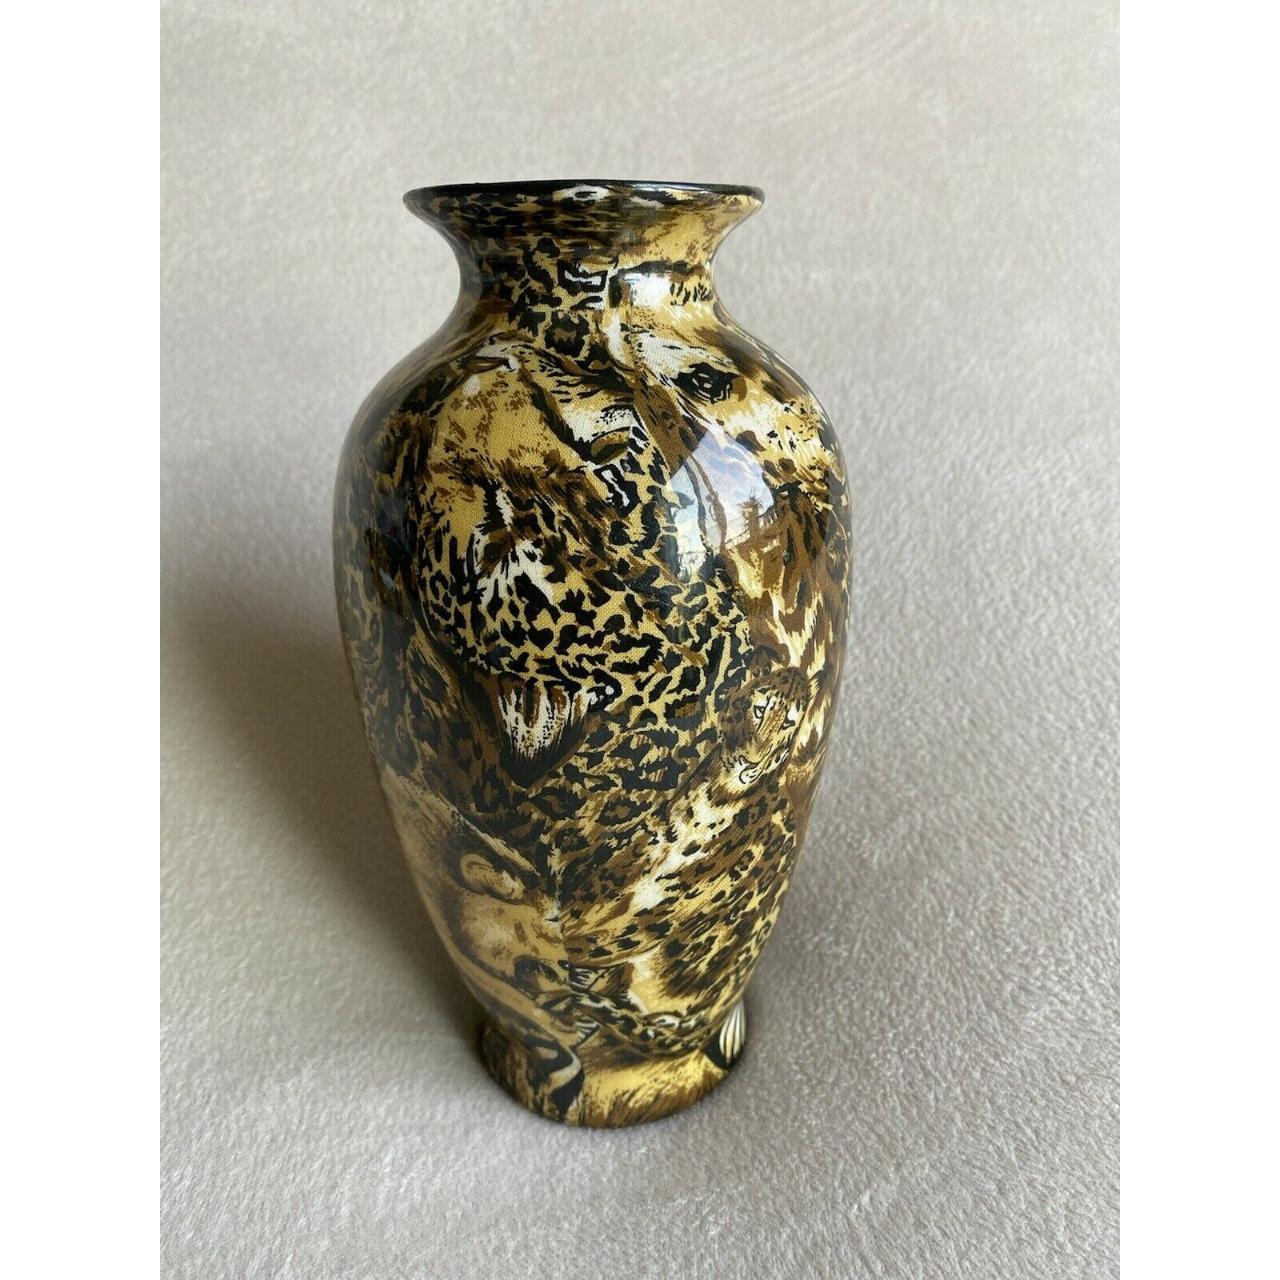 African patch work ceramic vase,